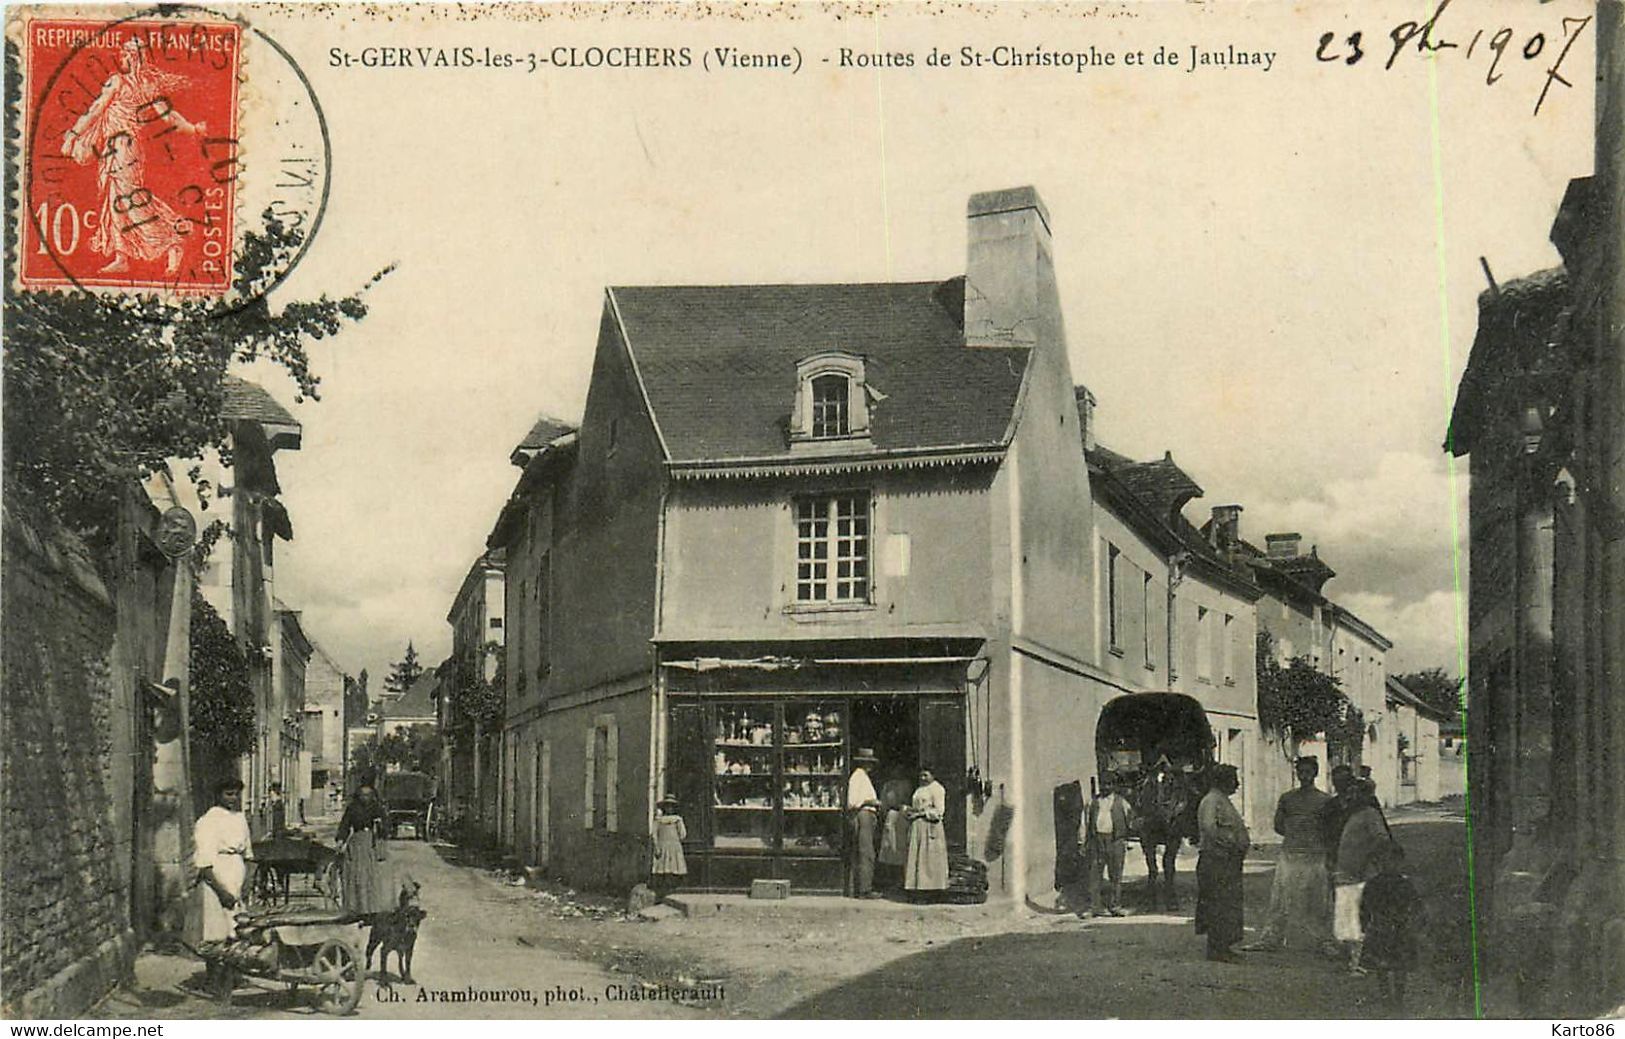 St Gervais Les 3 Clochers * Route De St Christophe Et Route De Jaulnay * Commerce Magasin * Attelage - Saint Gervais Les Trois Clochers